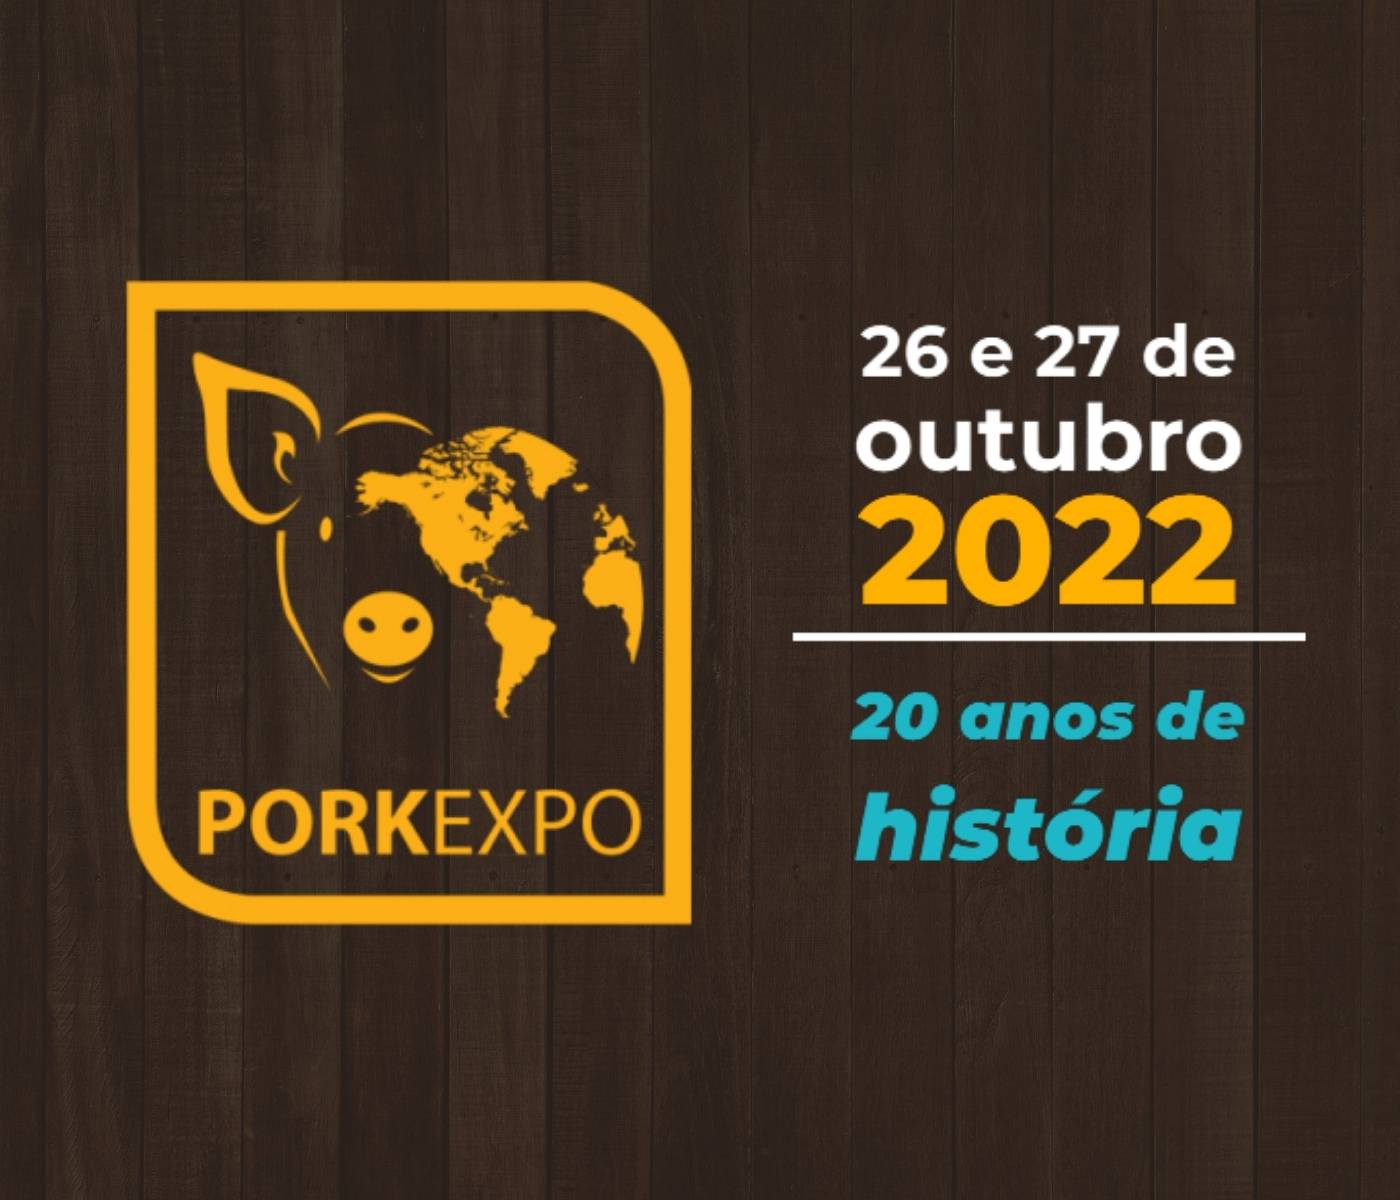  Pork Expo 2022 comemora duas décadas de Ciência, Mercado e Tradição na Suinocultura